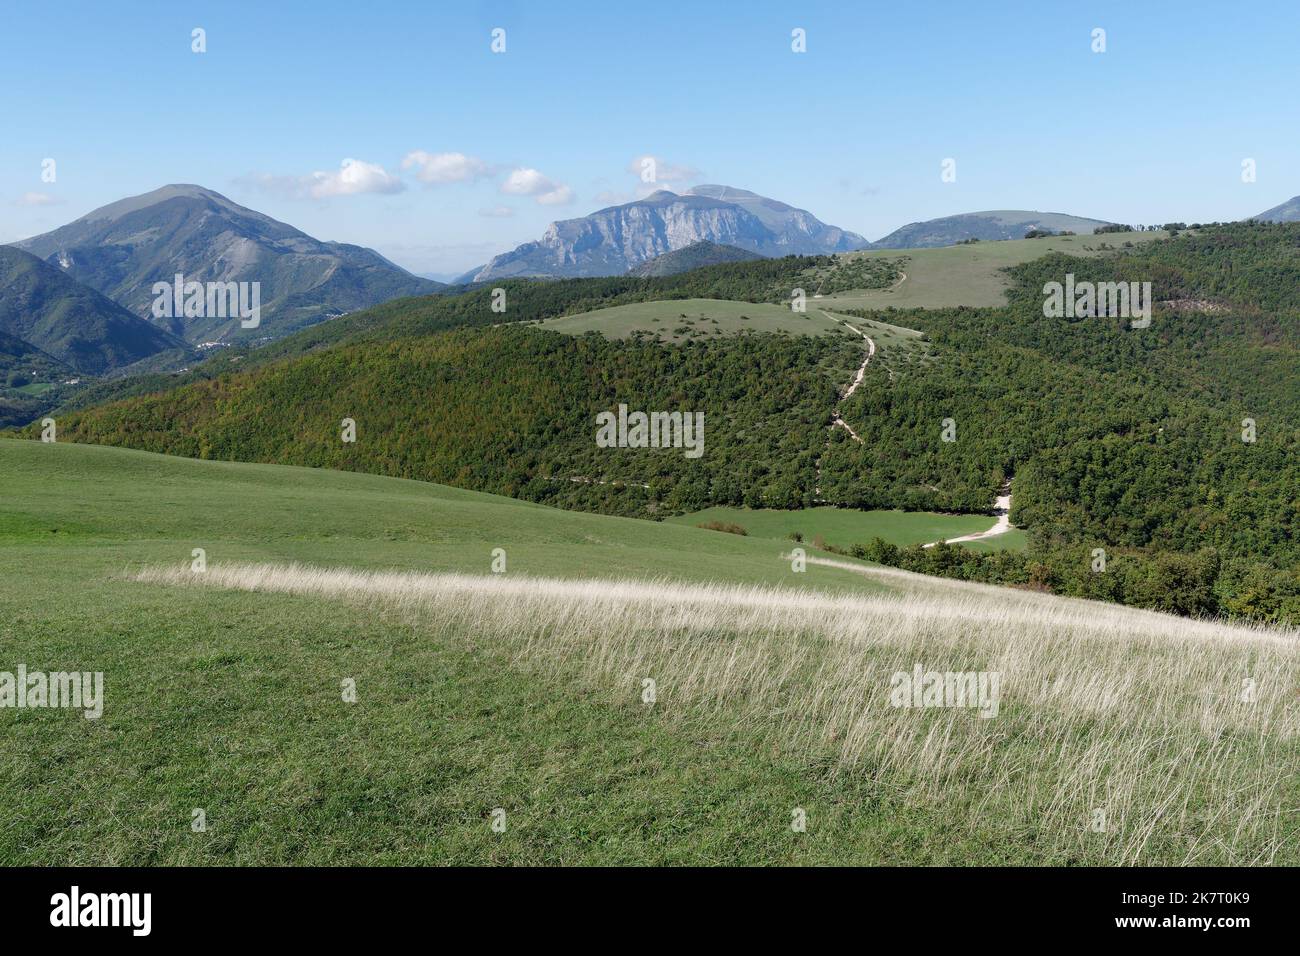 Miesola hilltop near the village of Coccore, Le Marche Region, Italy Stock Photo